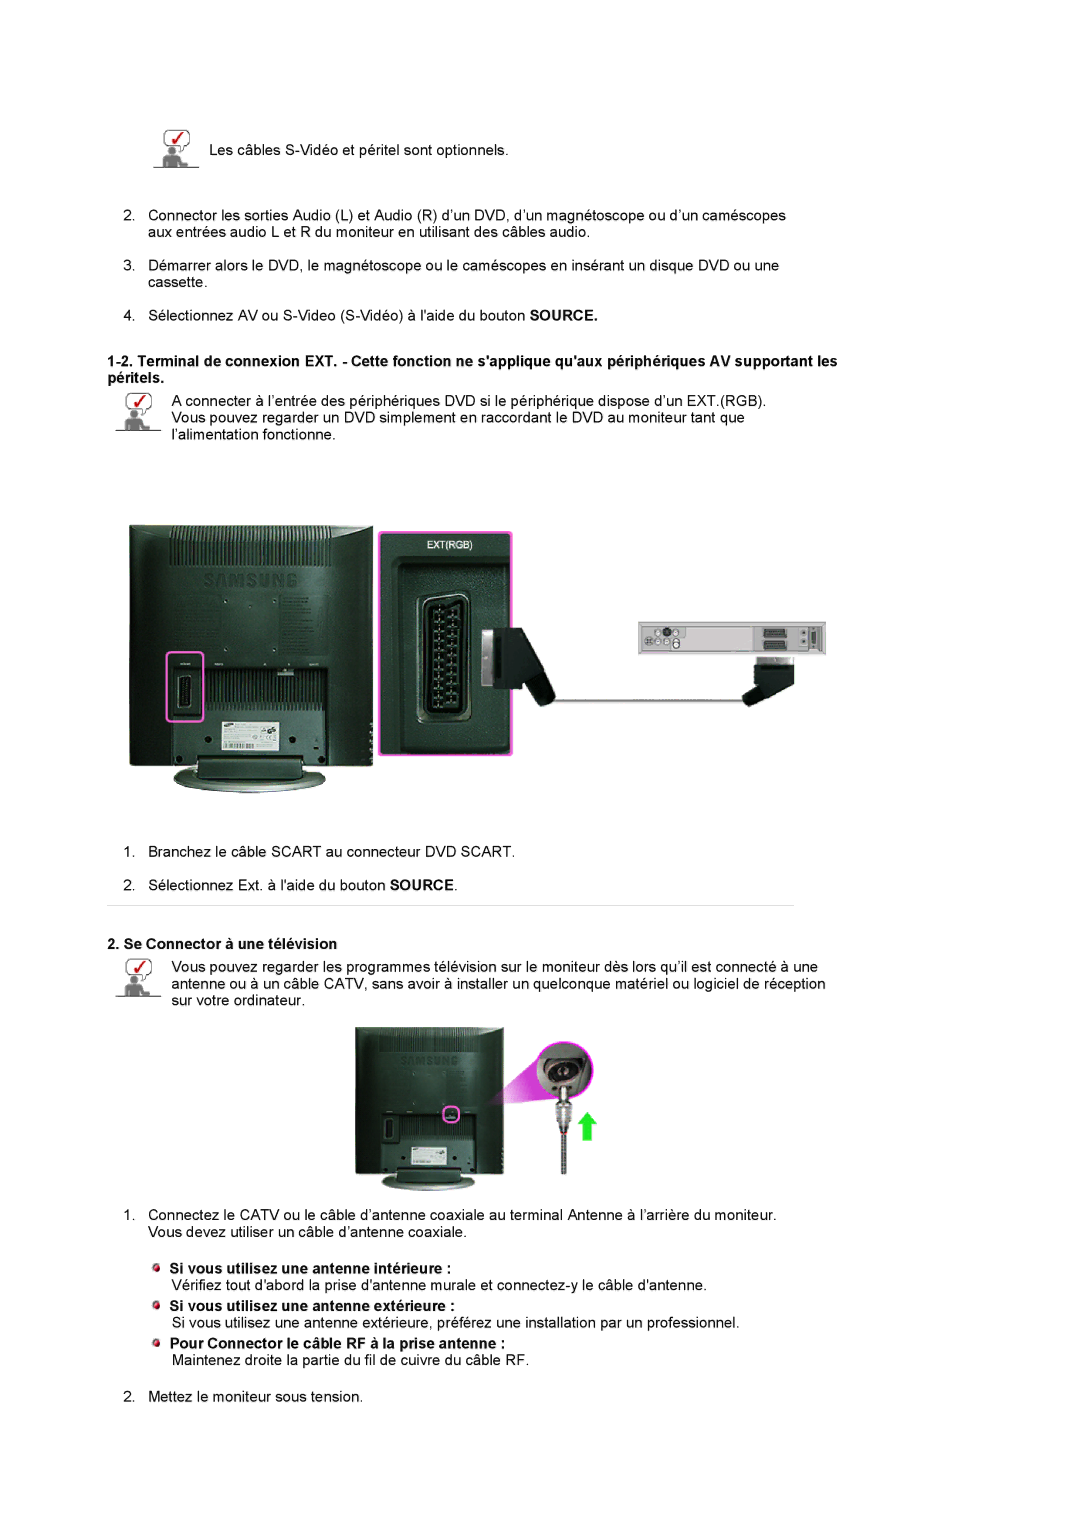 Samsung LS17MCASS/EDC manual Se Connector à une télévision, Si vous utilisez une antenne intérieure 